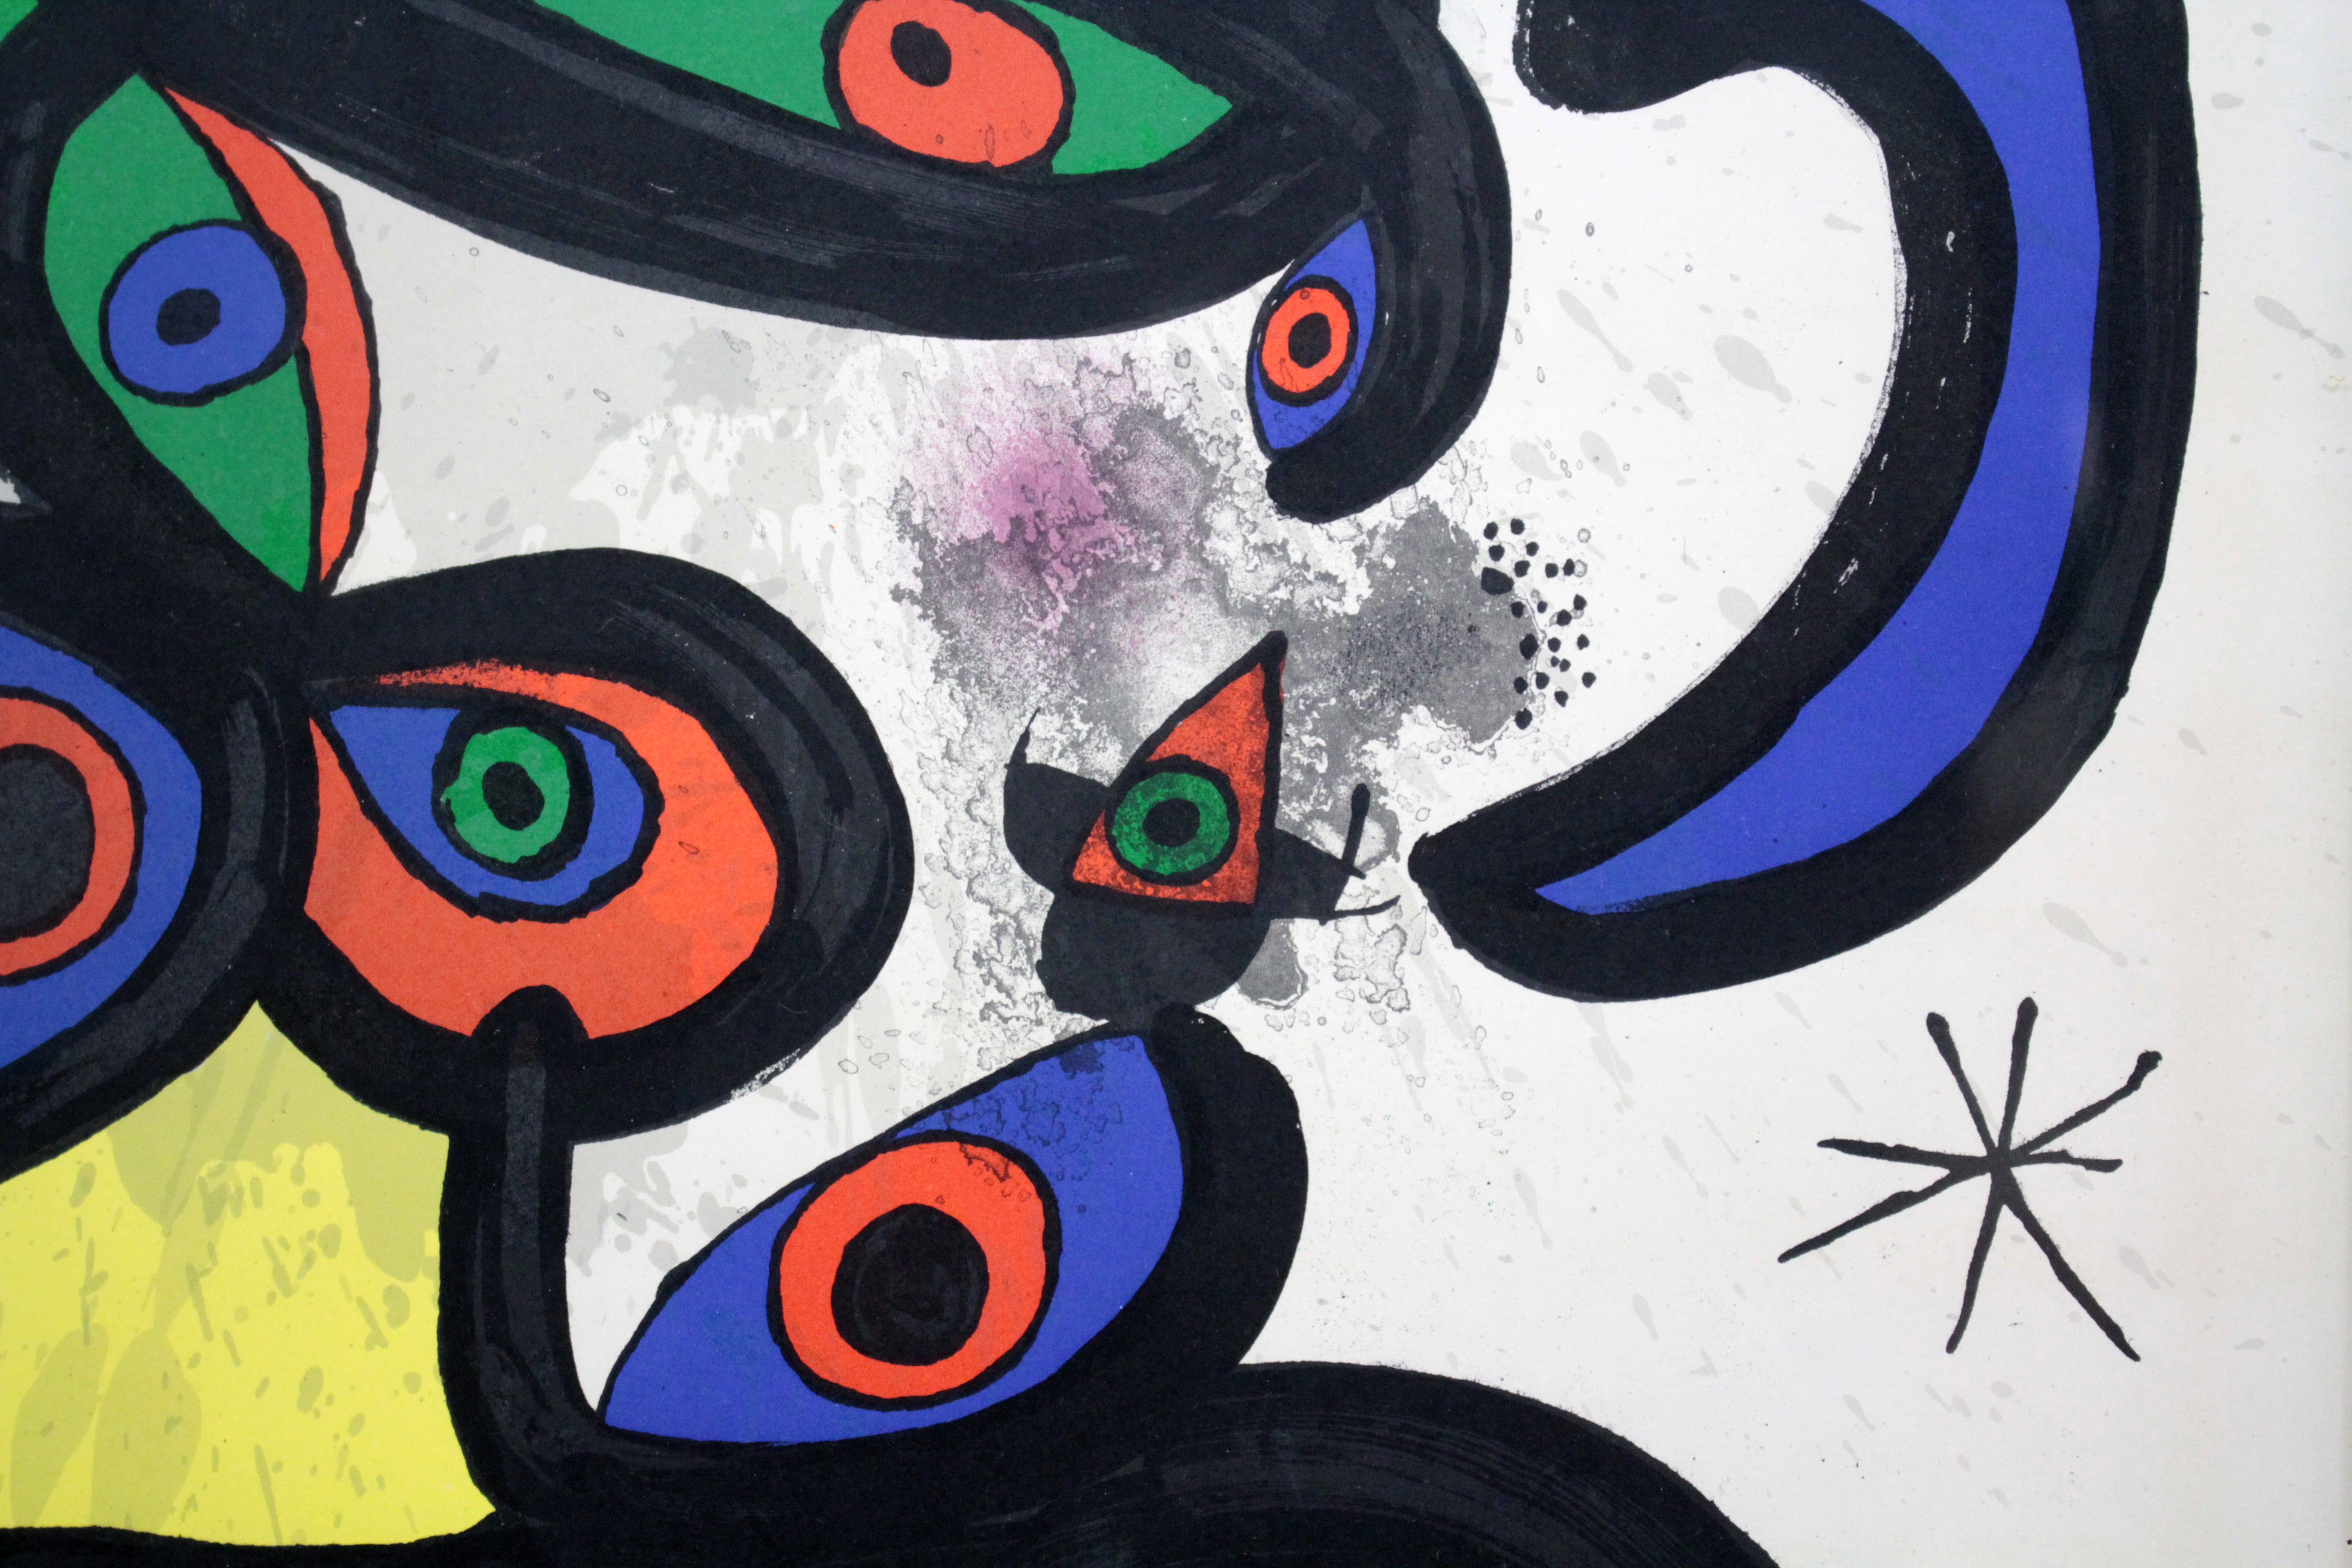 ジョアン・ミロ 『ギャラリー・マーグのヴィンテージ・リトグラフ』 リトグラフ - 北海道画廊